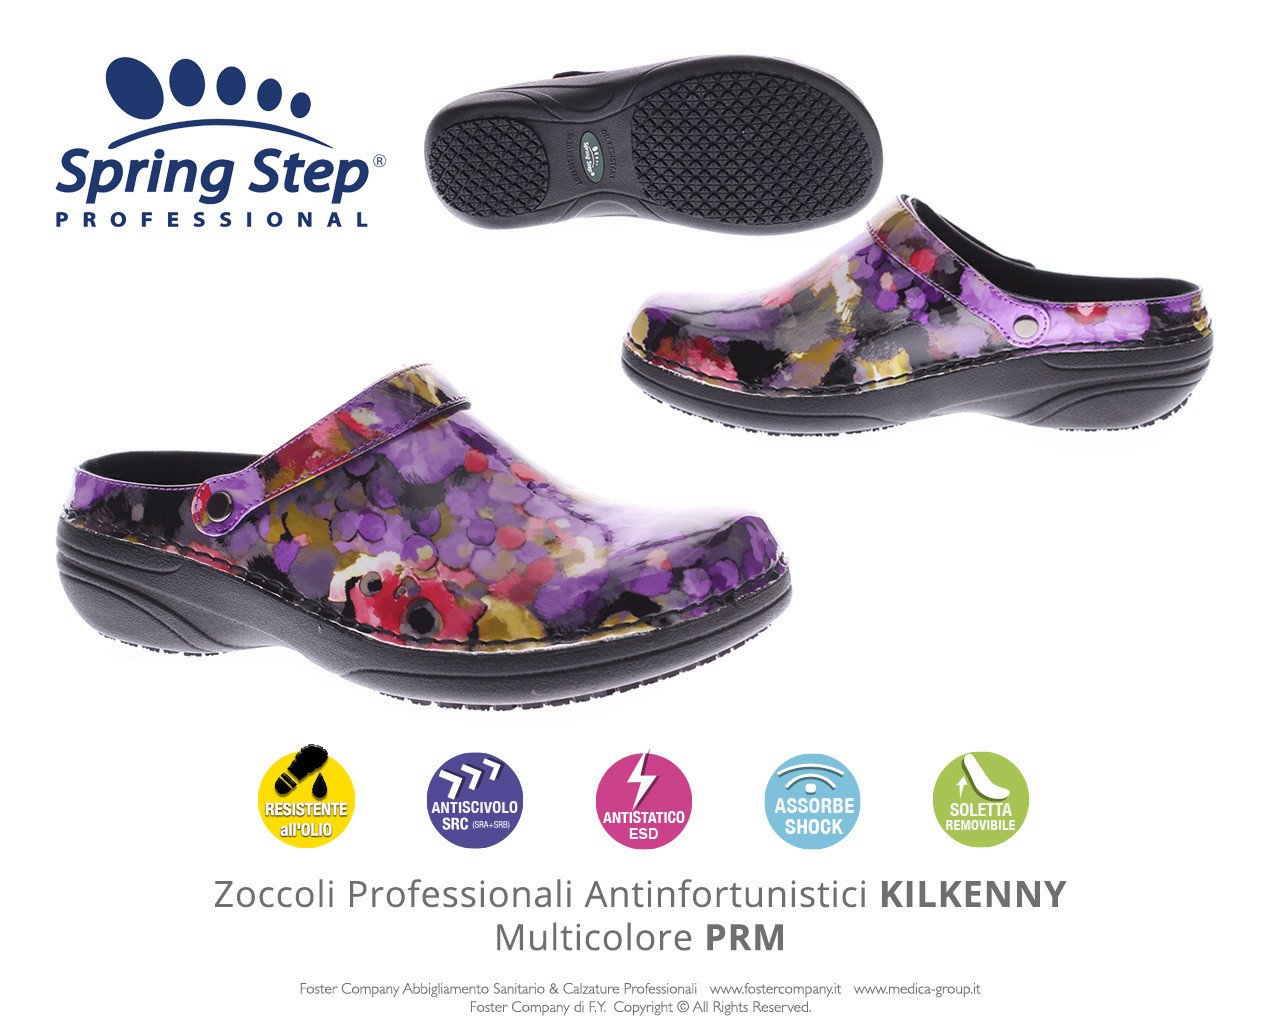 Zoccoli Professionali Spring Step KILKENNY Multicolore PRM - FINE SERIE